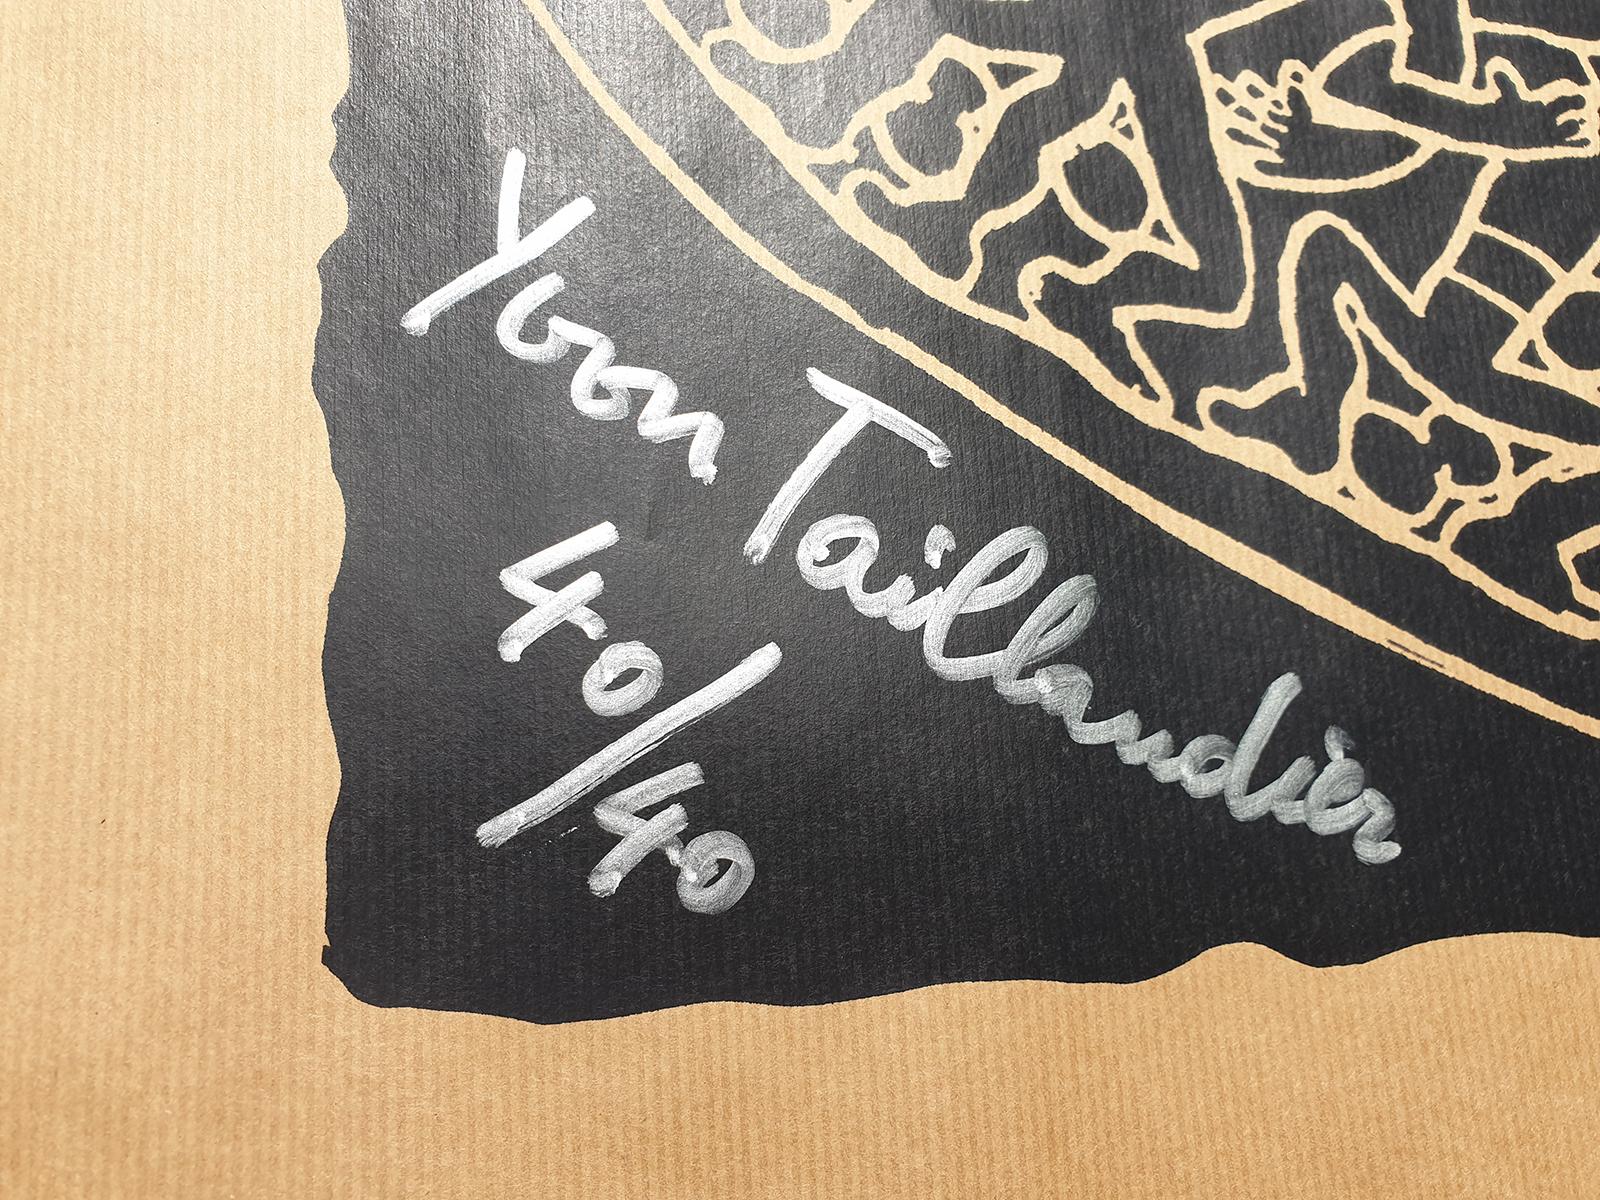 Tribal noir
2018
sérigraphie sur papier kraft
Signé et numérotée sur 40
40/40
avec certificat de la galerie
Œuvre : 65 x 100 cm
taille de l'image : 54 x 68.5 cm
Parfait état
Prix de vente : 290 euros